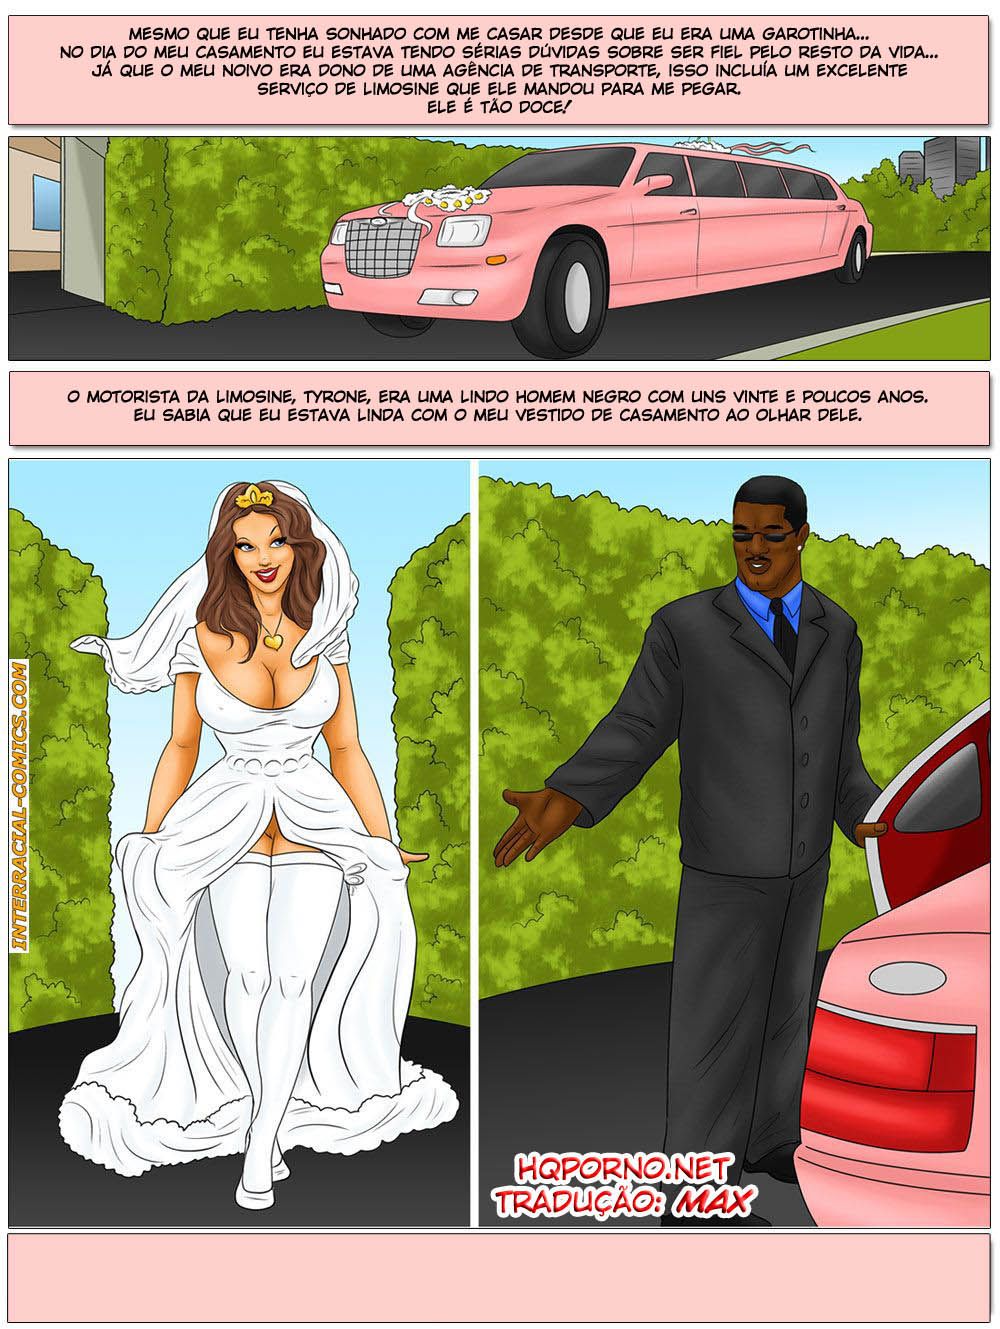 No pau do motorista negão antes de casar